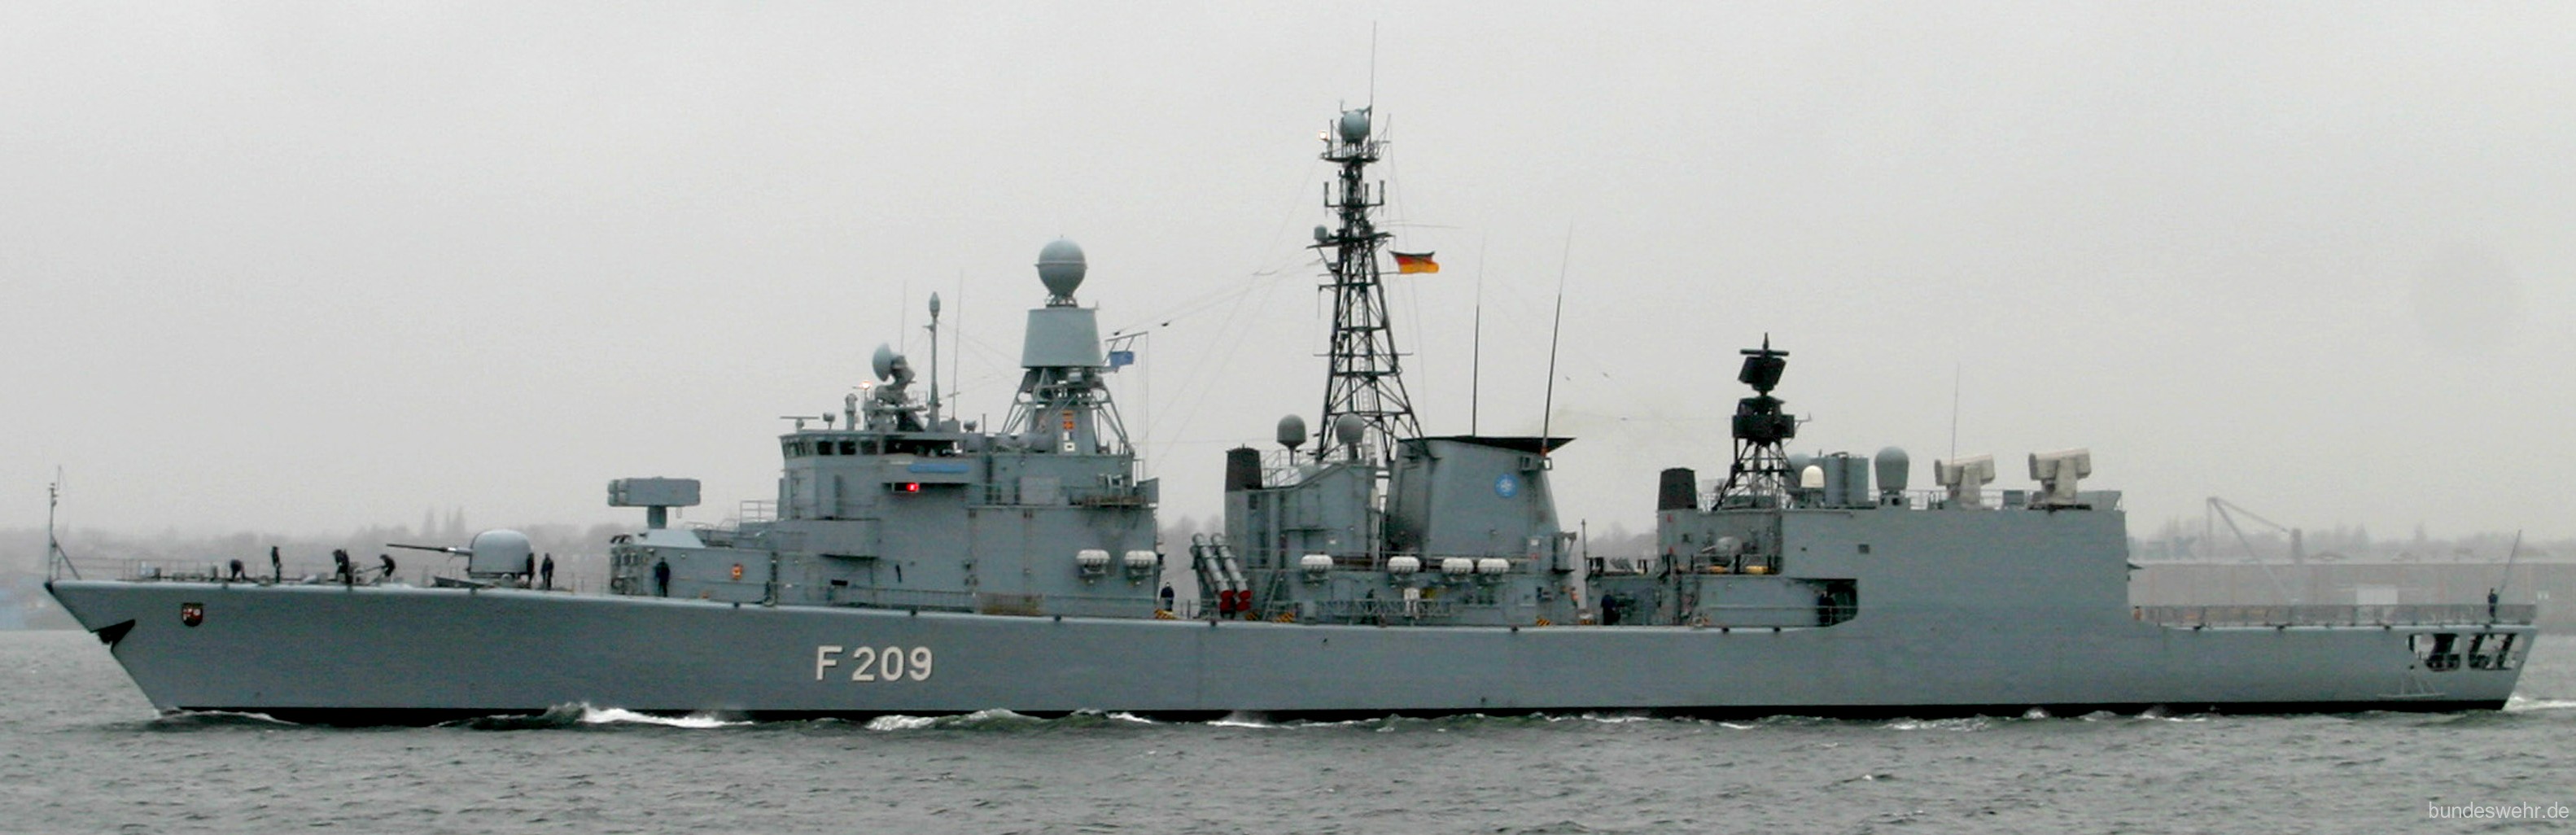 f-209 fgs rheinland-pfalz type 122 bremen class frigate german navy deutsche marine fregatte 04